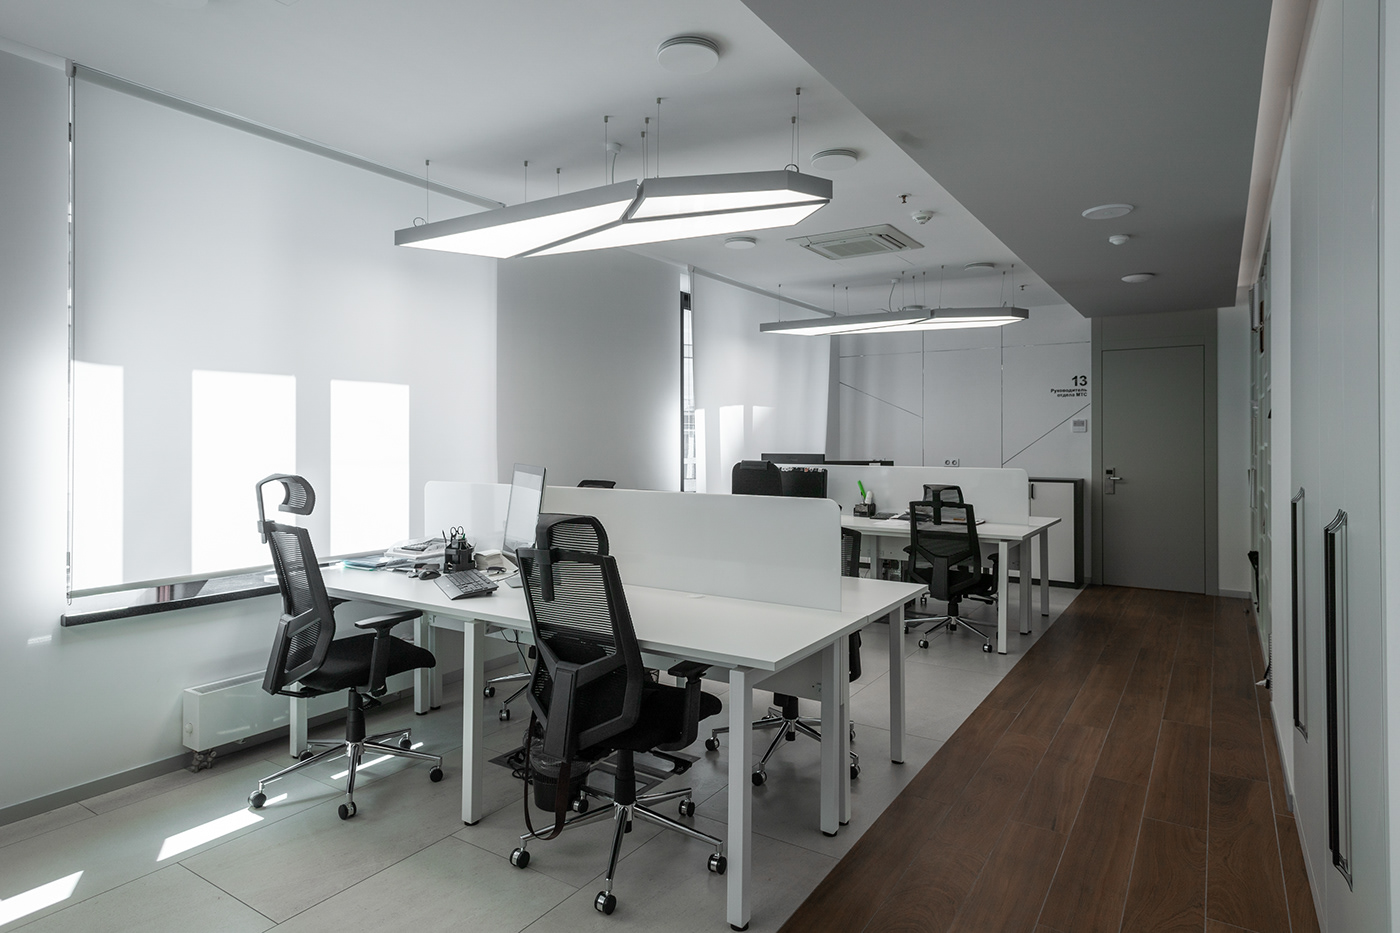 освещение Светильники  офис interior design  Lighting Design  DIALux освещение интерьера освещение офиса световой дизайн светодизайн